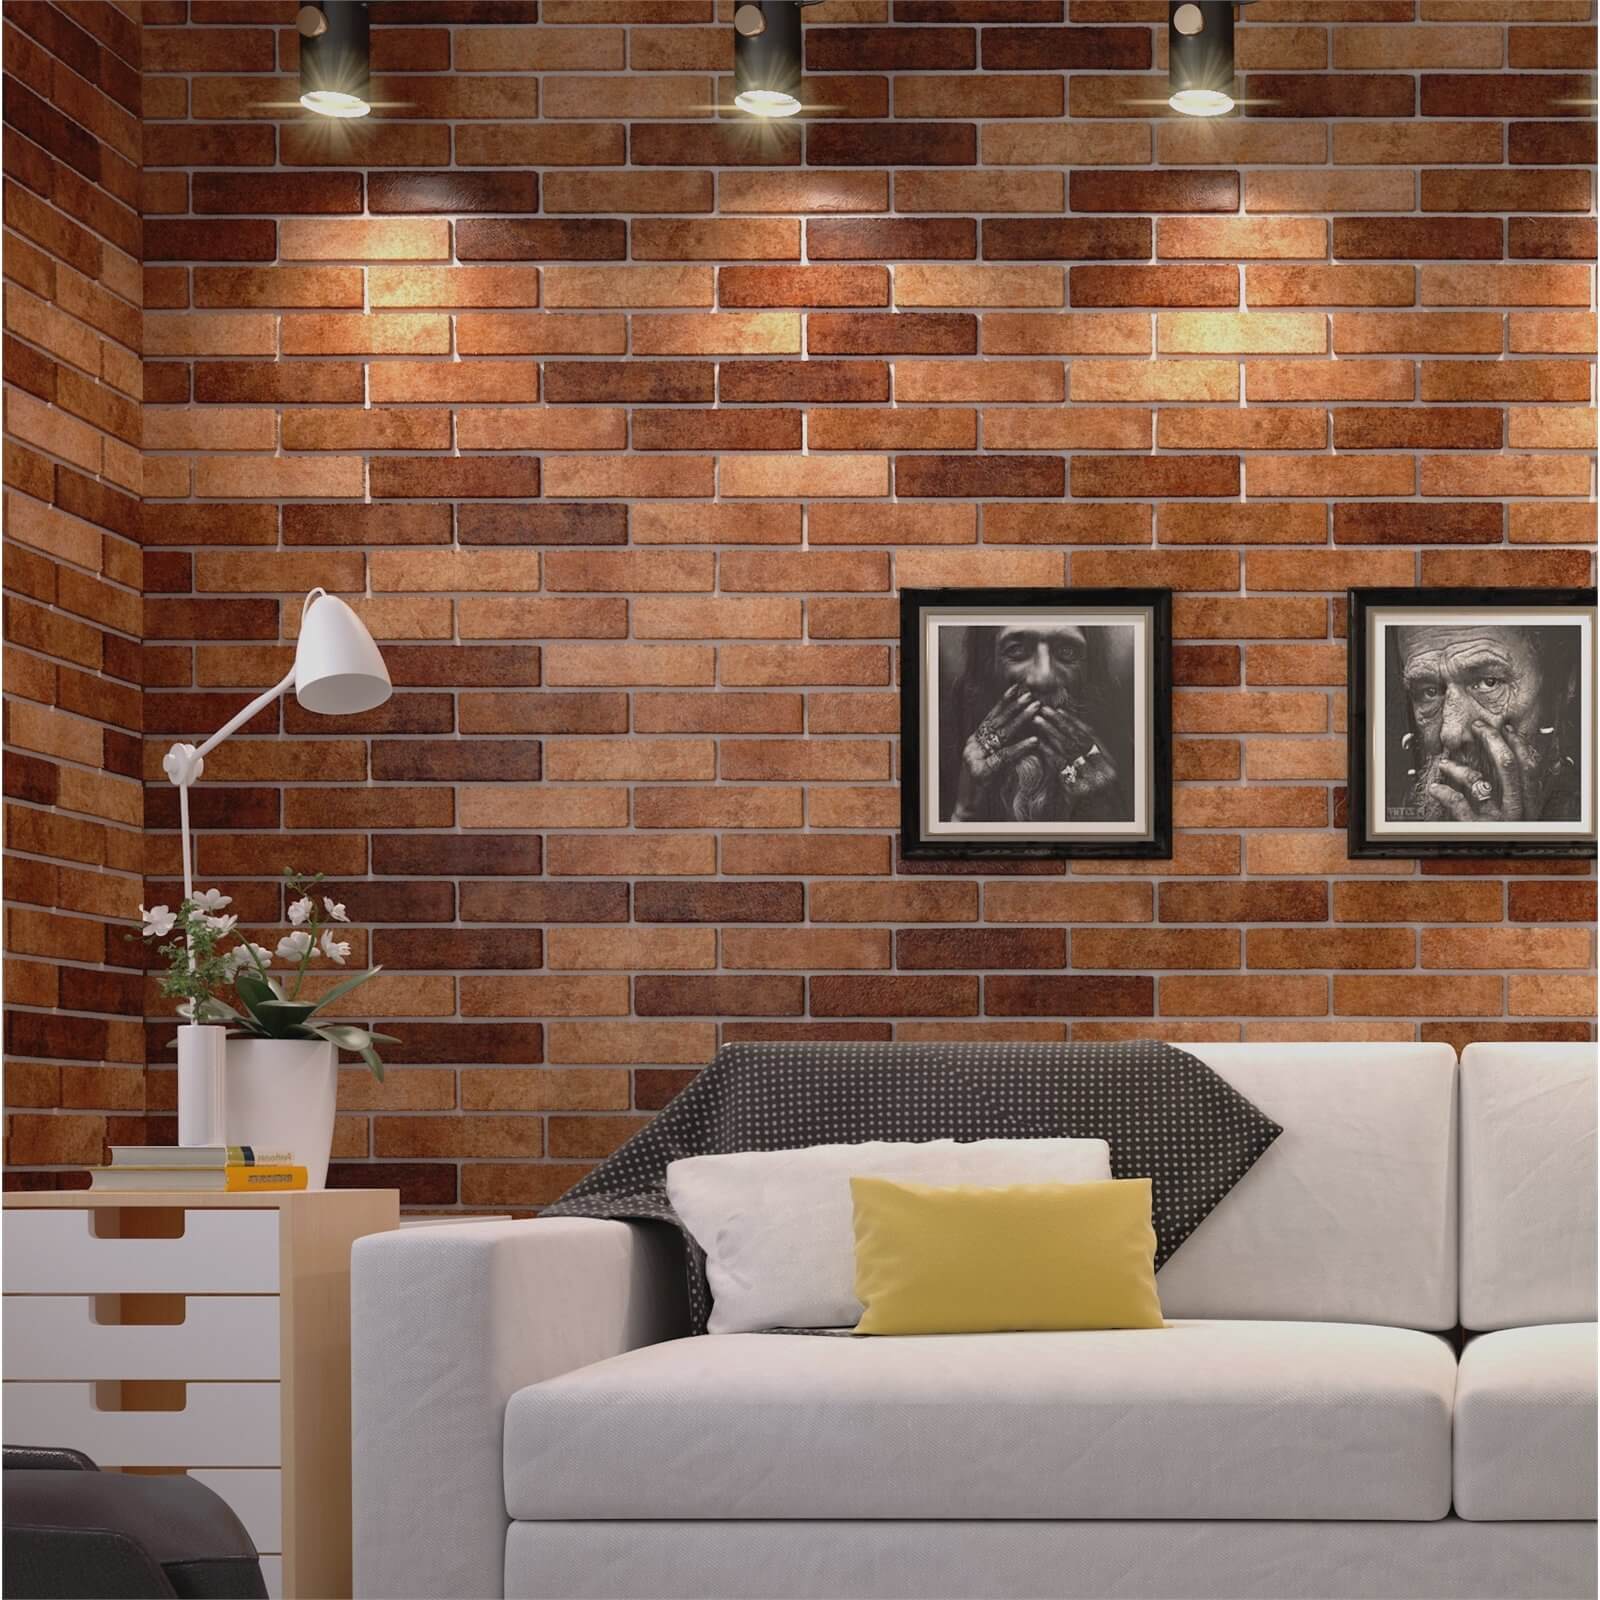 Seven Tones Brick Wall Tiles 250 x 60mm